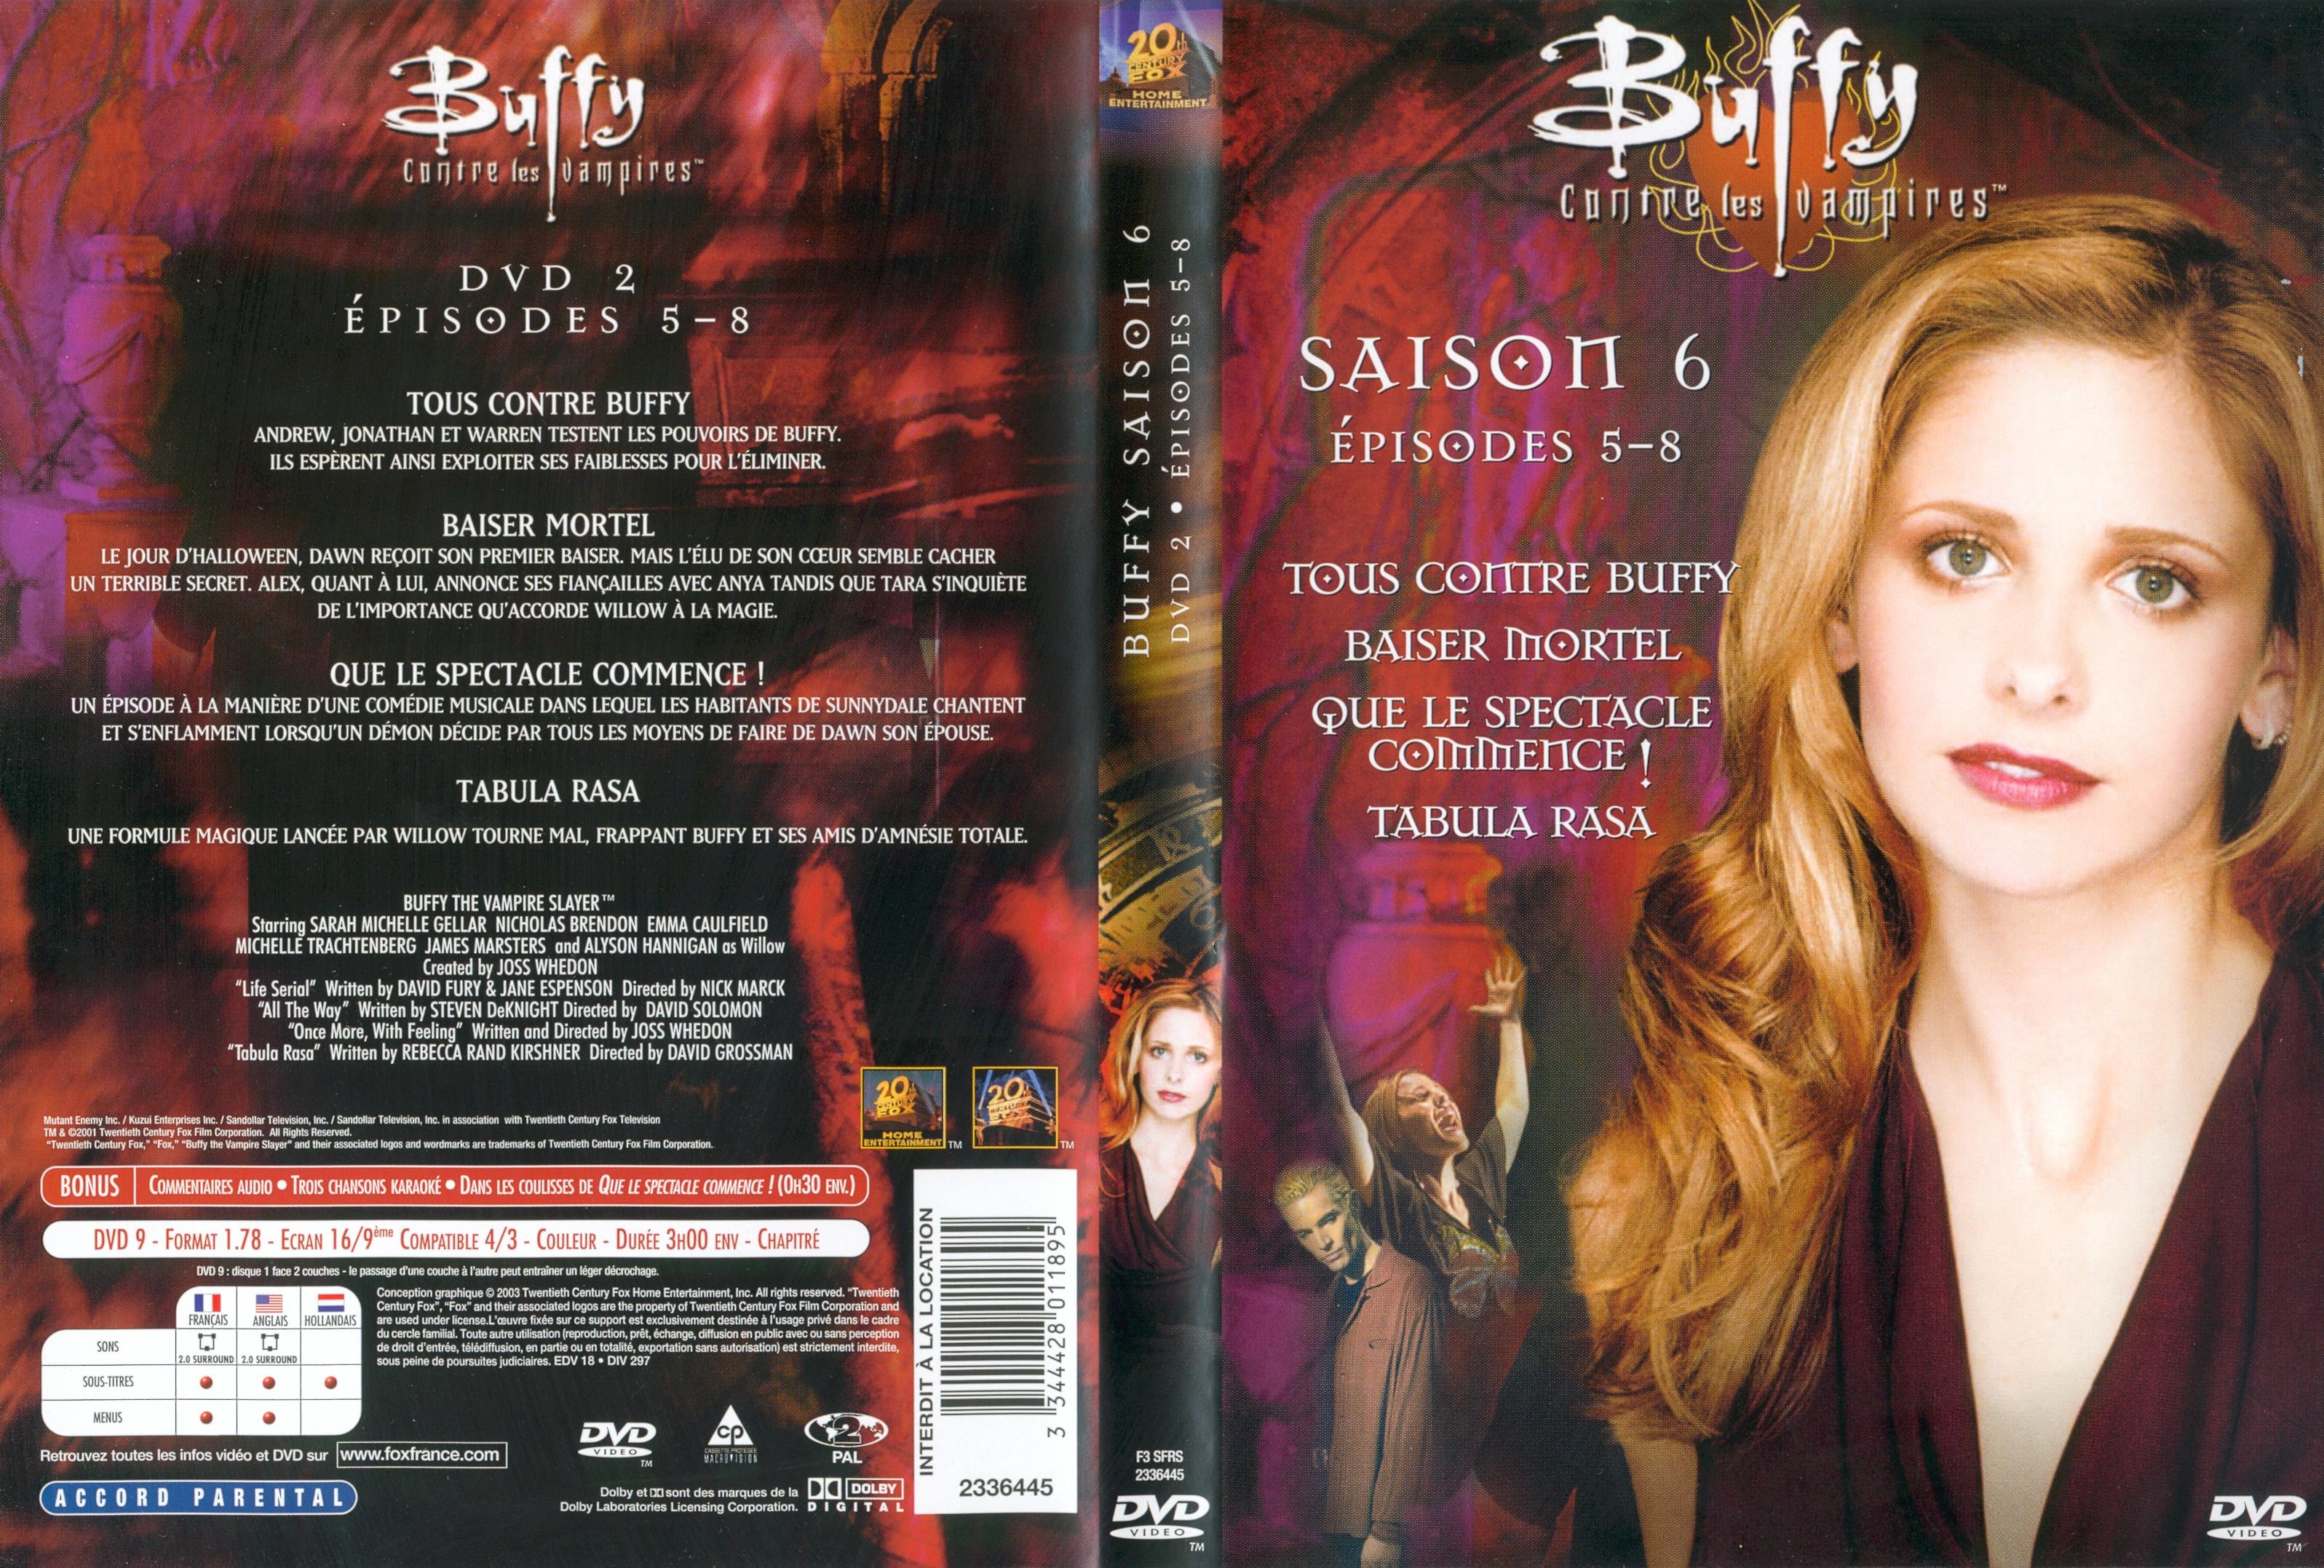 Jaquette DVD Buffy contre les vampires Saison 6 DVD 2